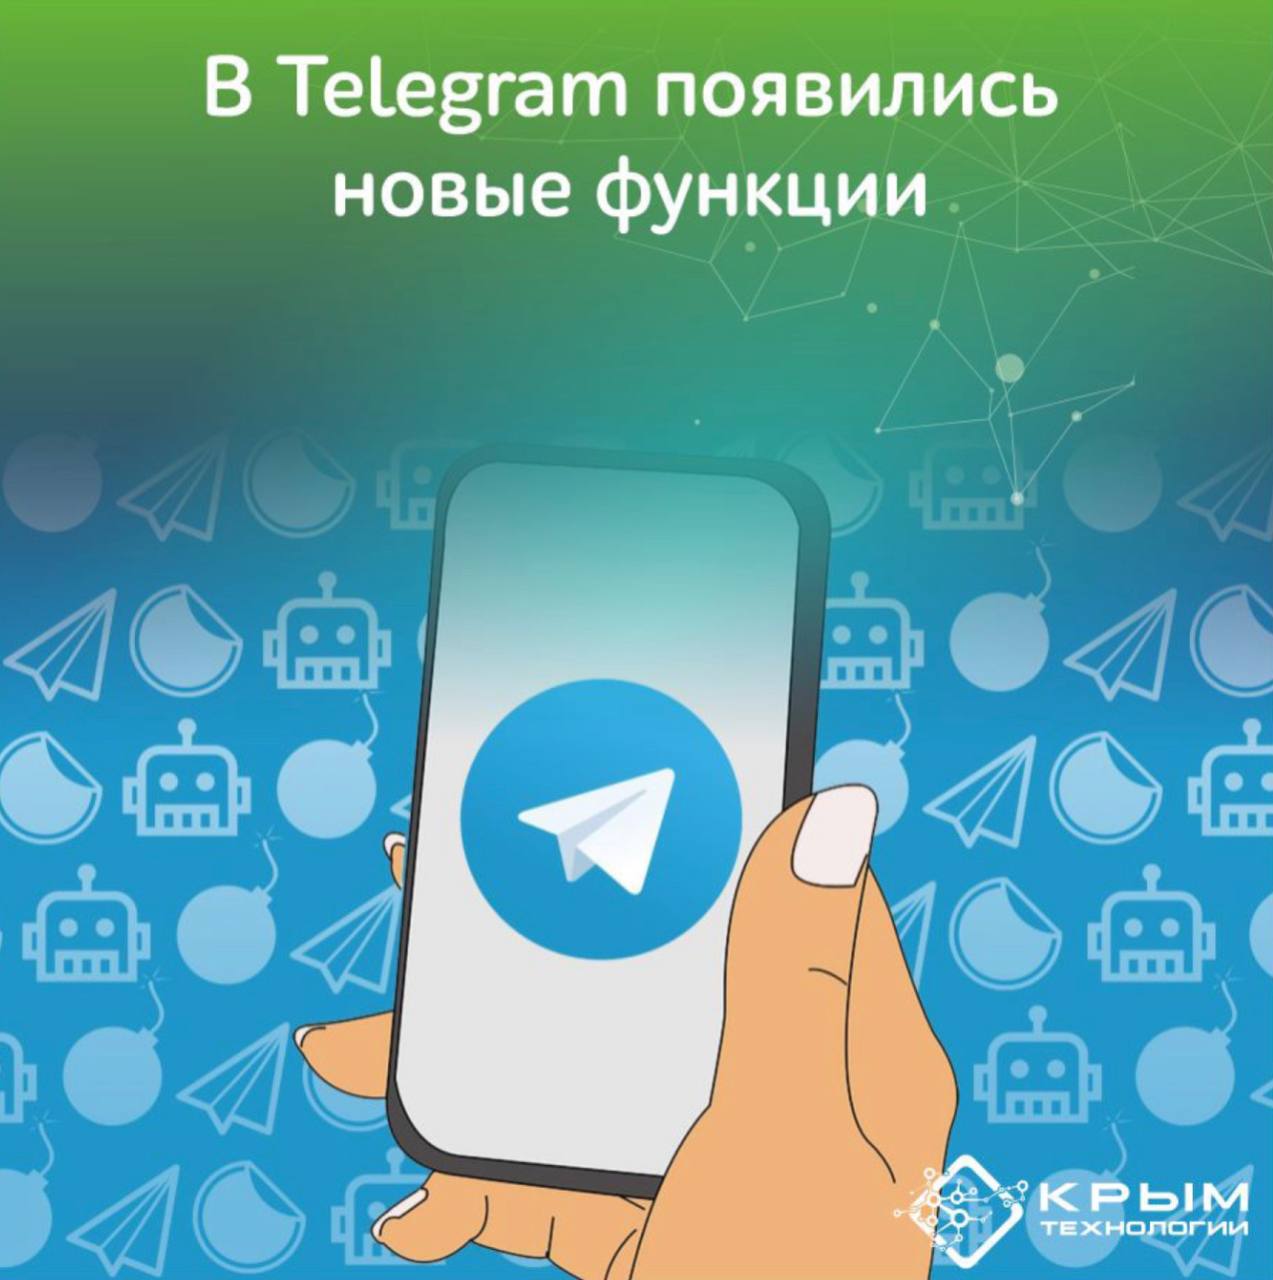 Скачать последнюю версию телеграмм русский язык на андроид фото 80